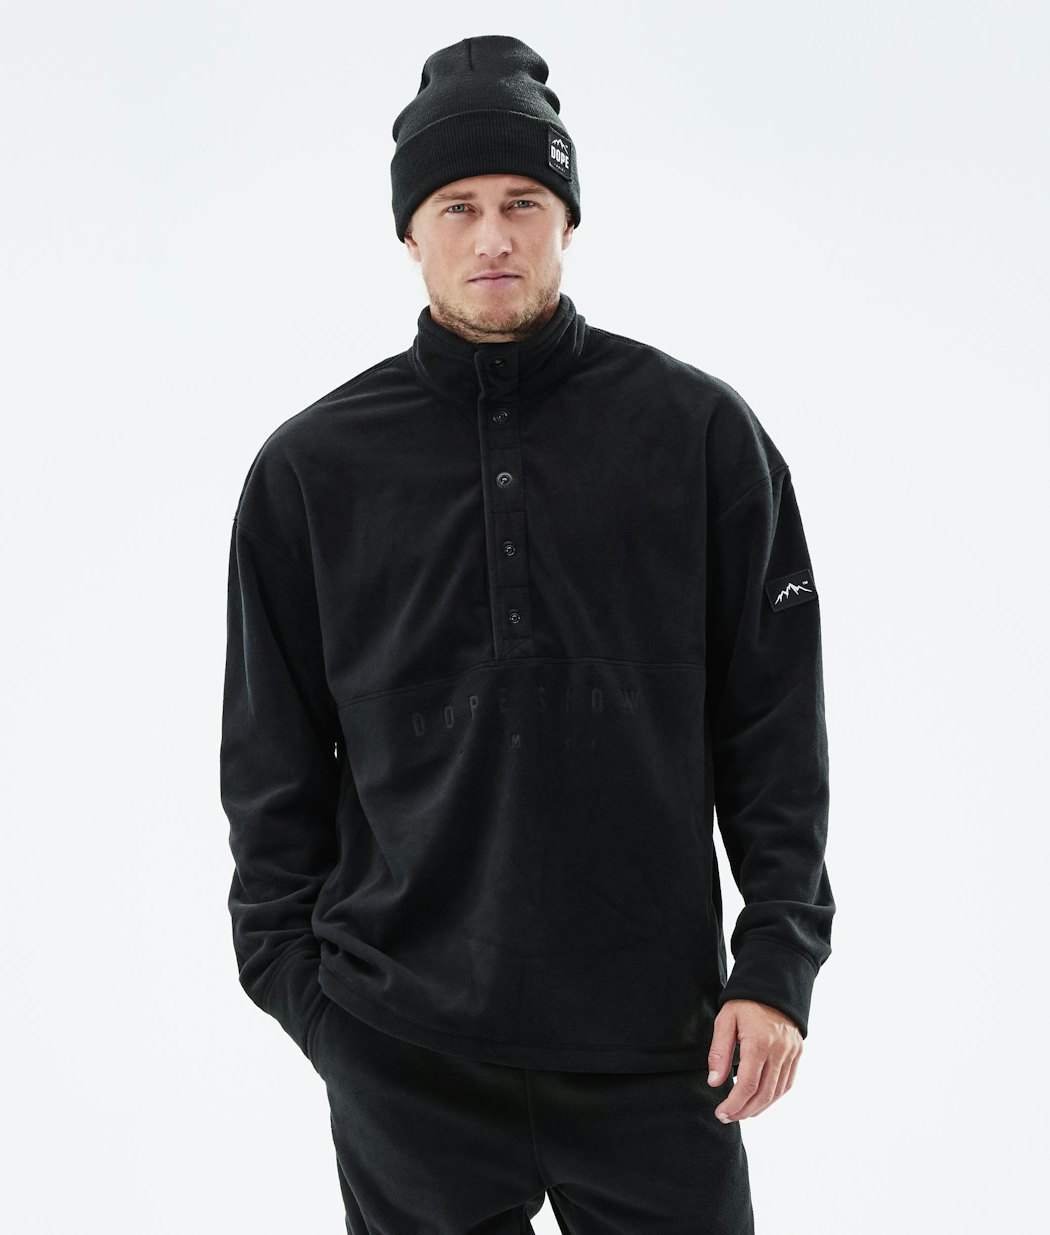 Dope Comfy Men's Fleece Sweater Black